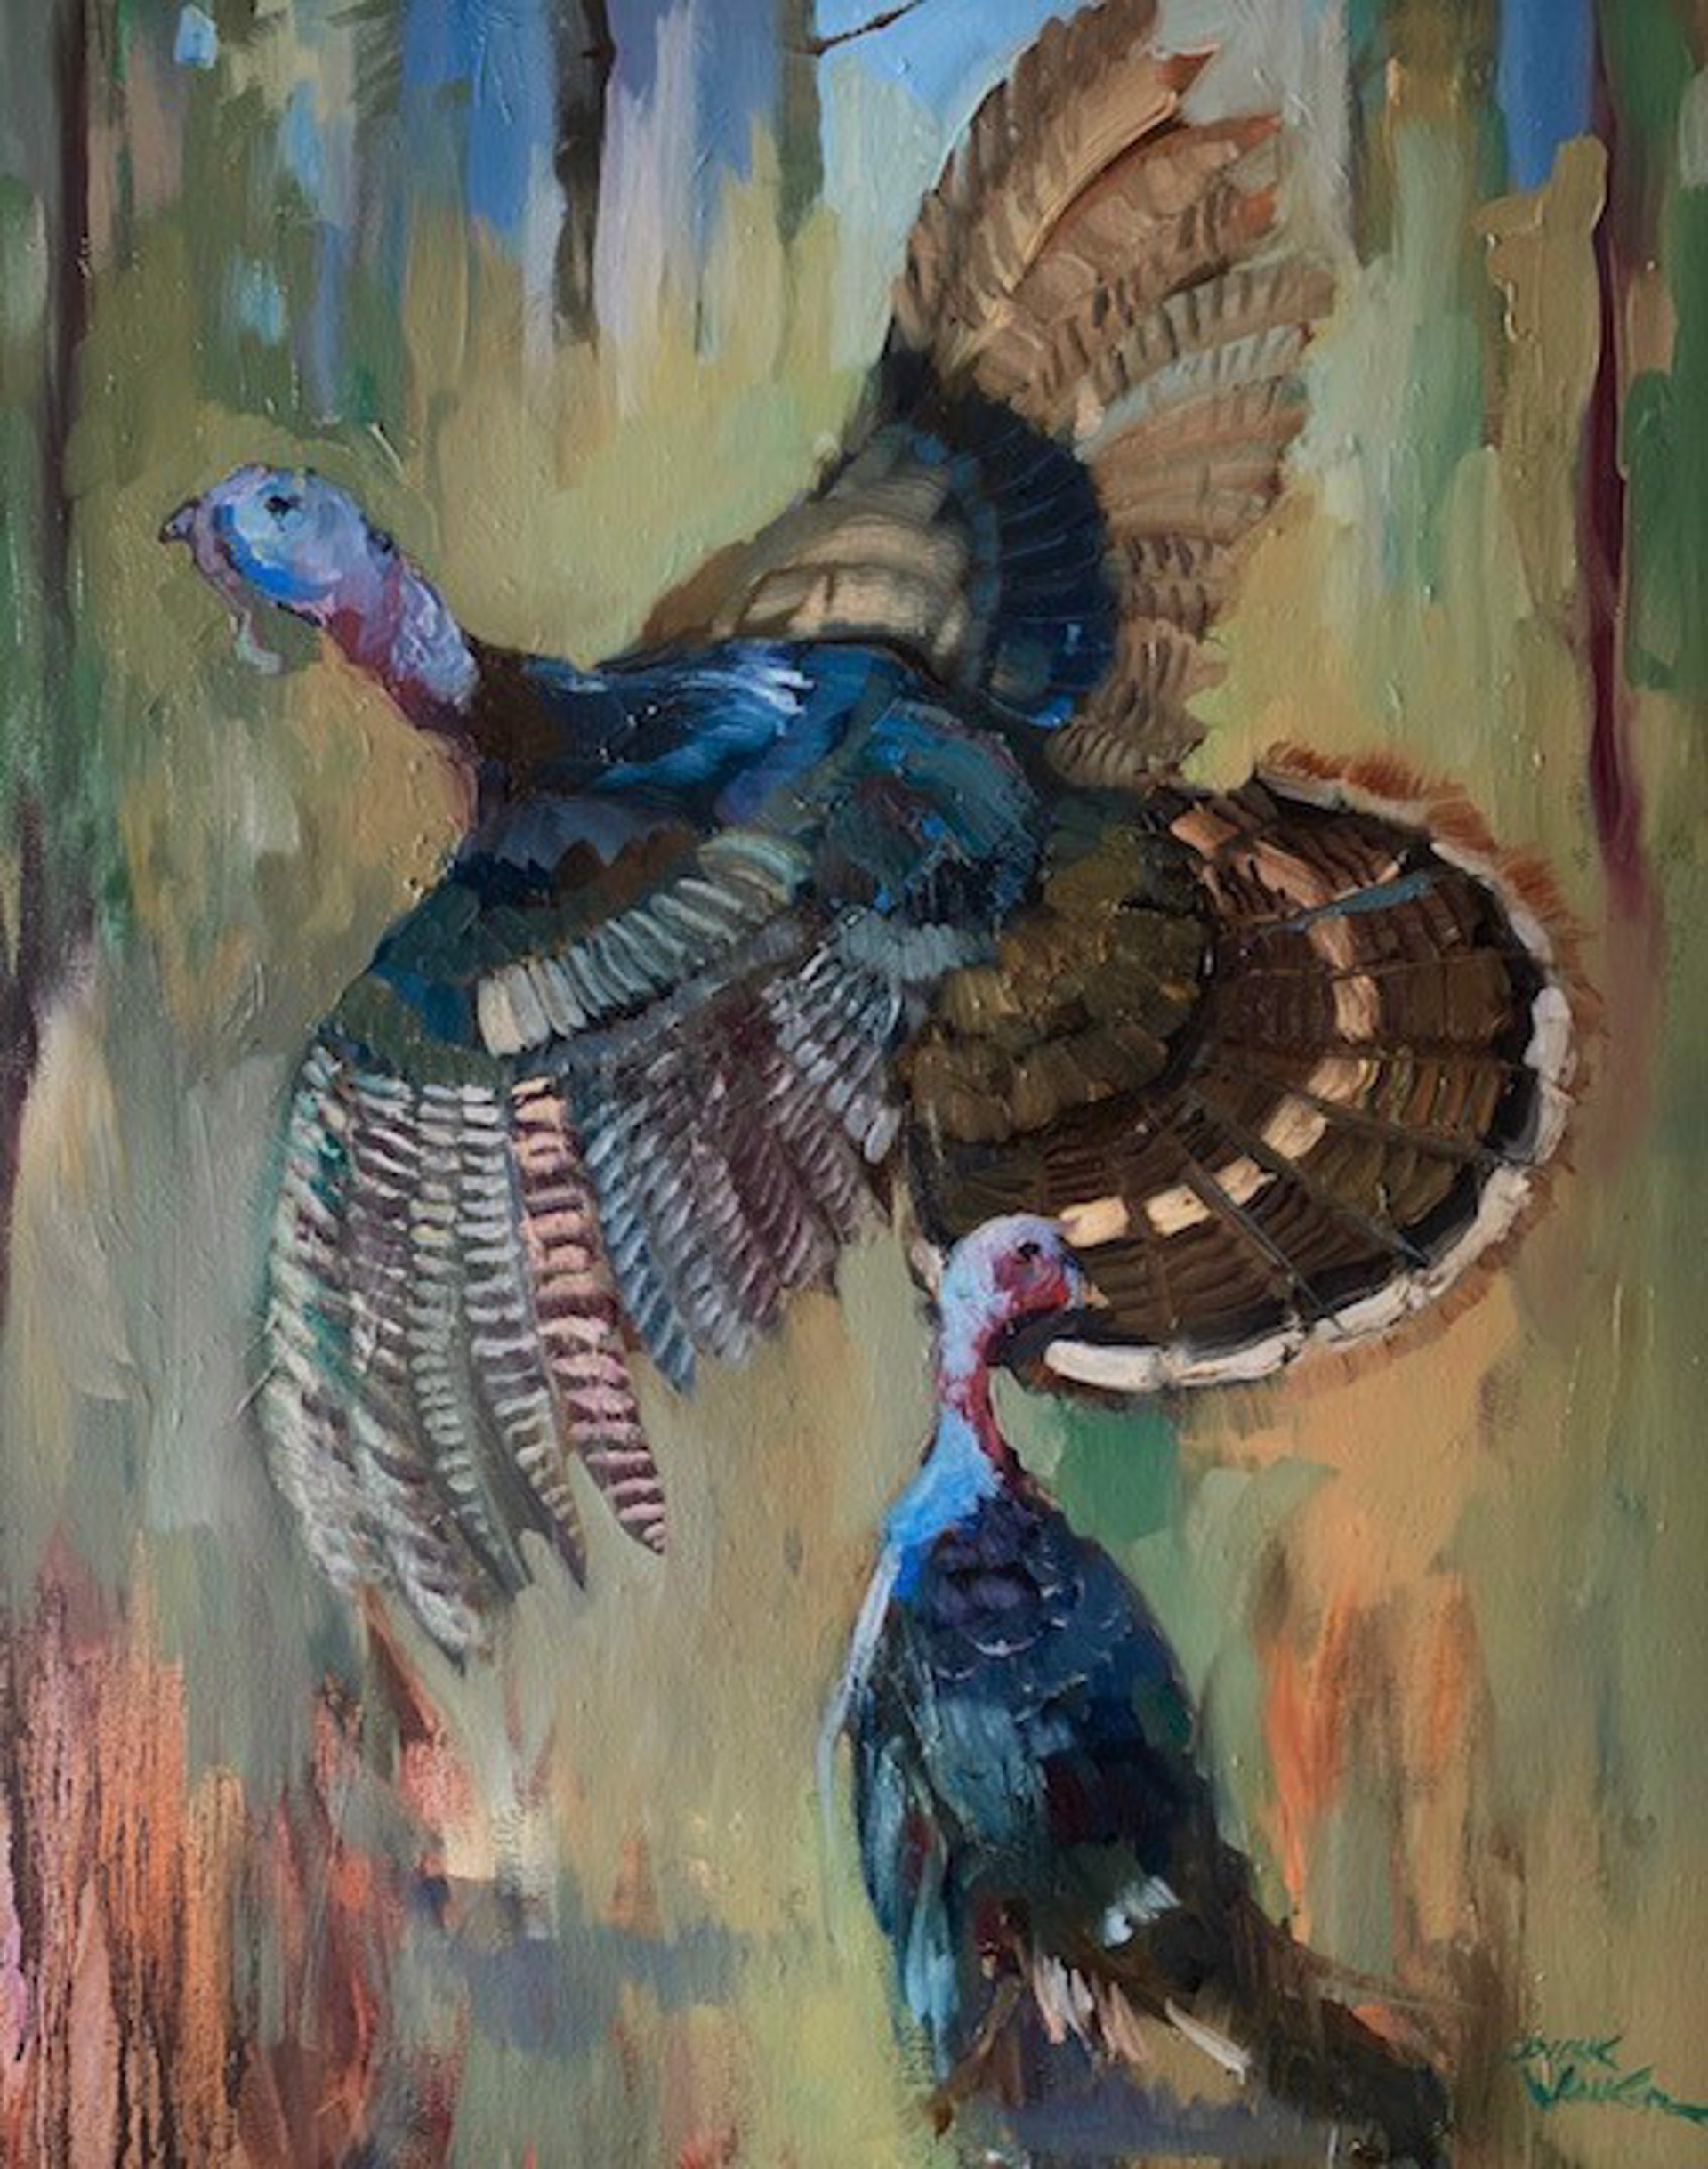 Spooked Turkeys by Dirk Walker